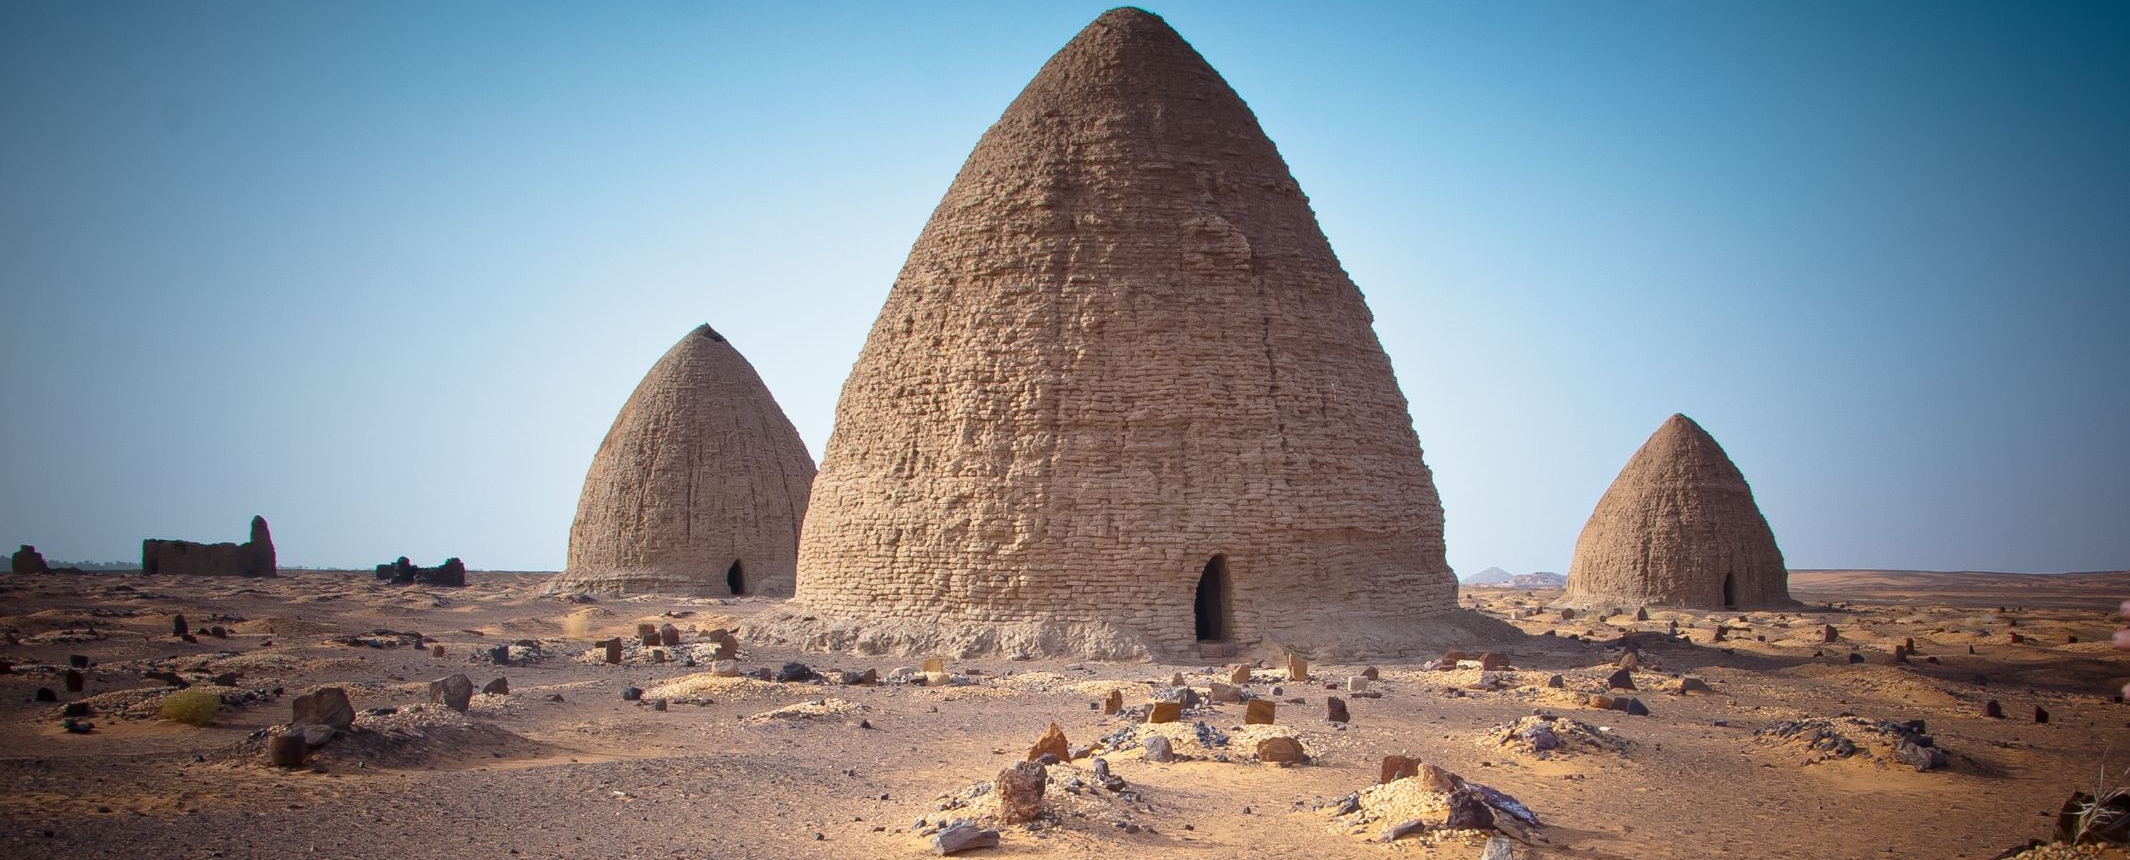 Ardiente Rechazado Igualmente Faraones Negros. Región Nubia y el Nilo ©Viajes Tuareg